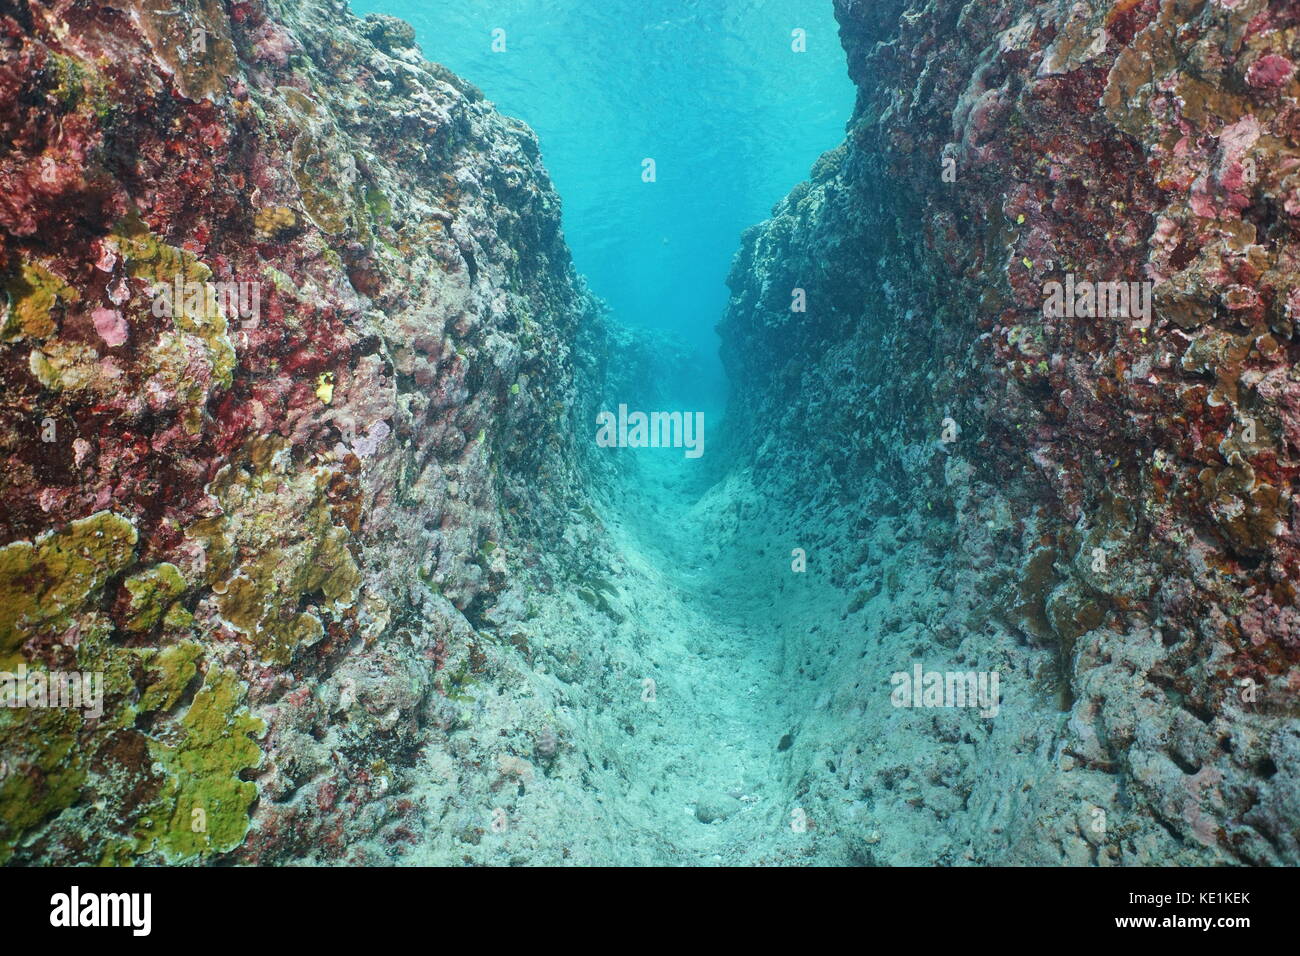 Trincea subacquea nella barriera corallina esterna a causa di erosione naturale, huahine isola, oceano pacifico del sud, Polinesia francese, Oceania Foto Stock